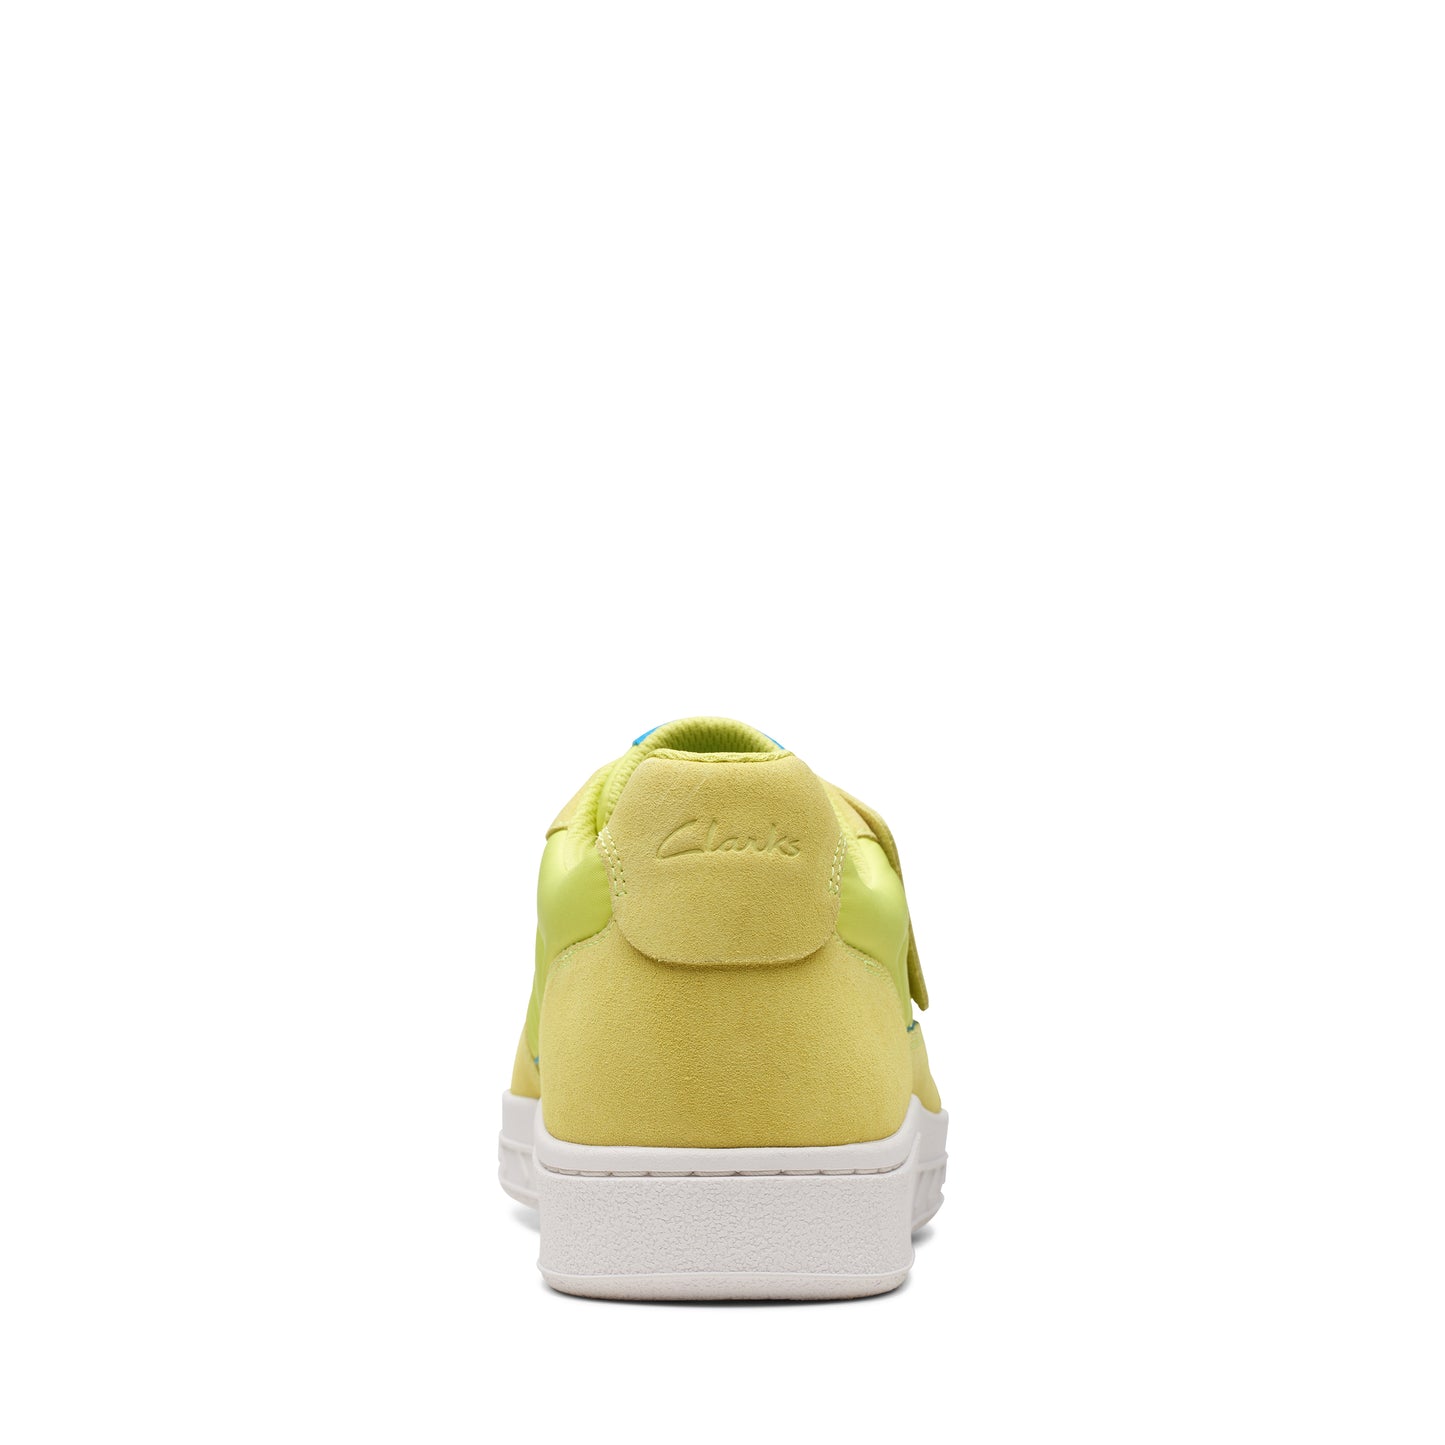 Sneakers De La Marca Clarks Para Hombre Modelo Craftrally Ace Pale Lime En Color Amarillo